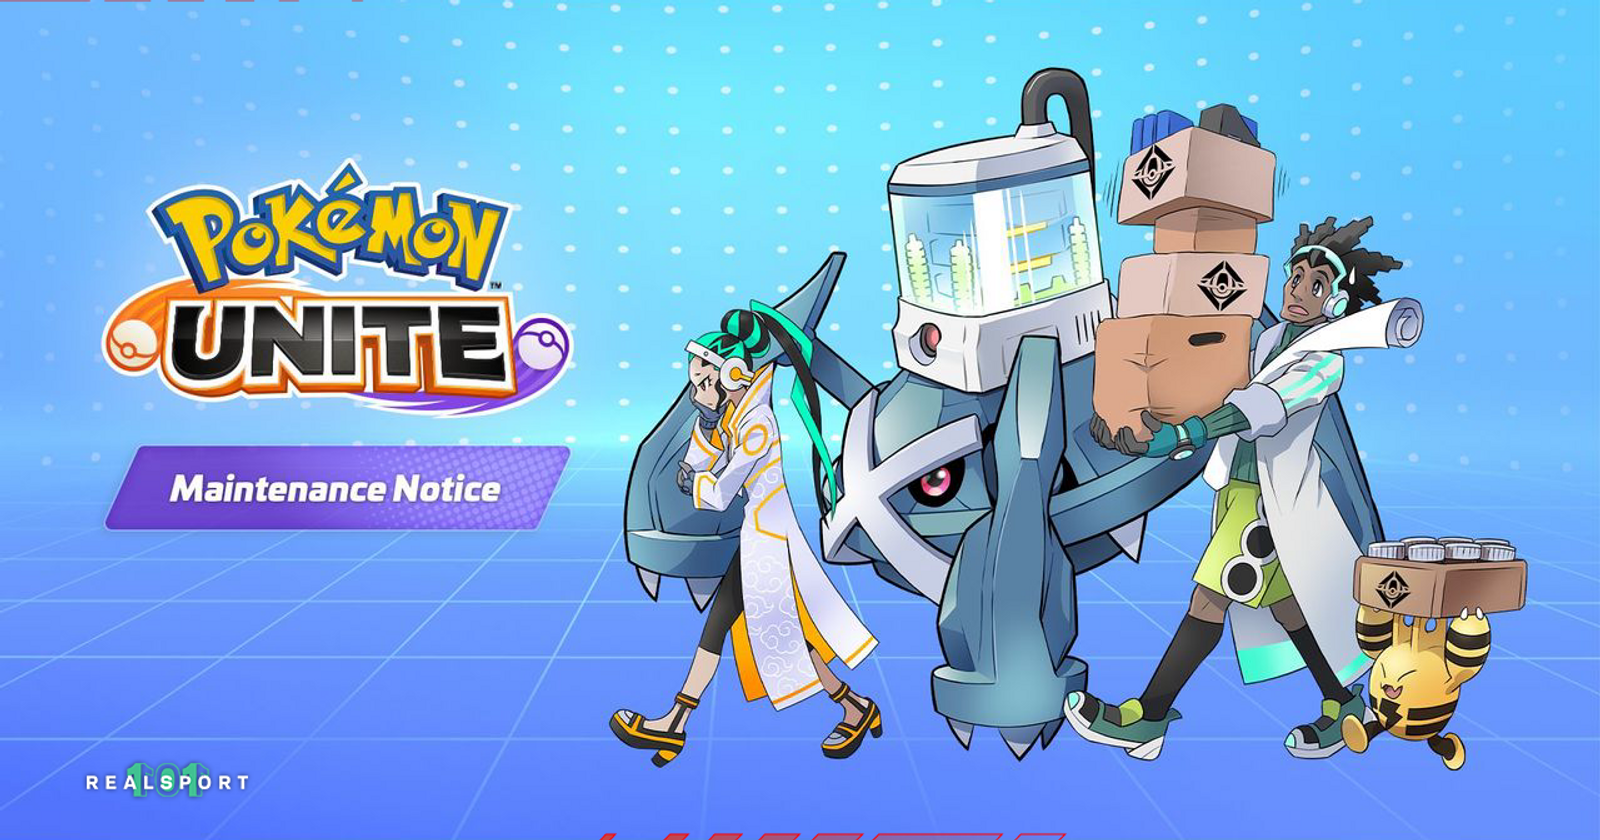 Pokémon UNITE for Nintendo Switch - Nintendo Official Site